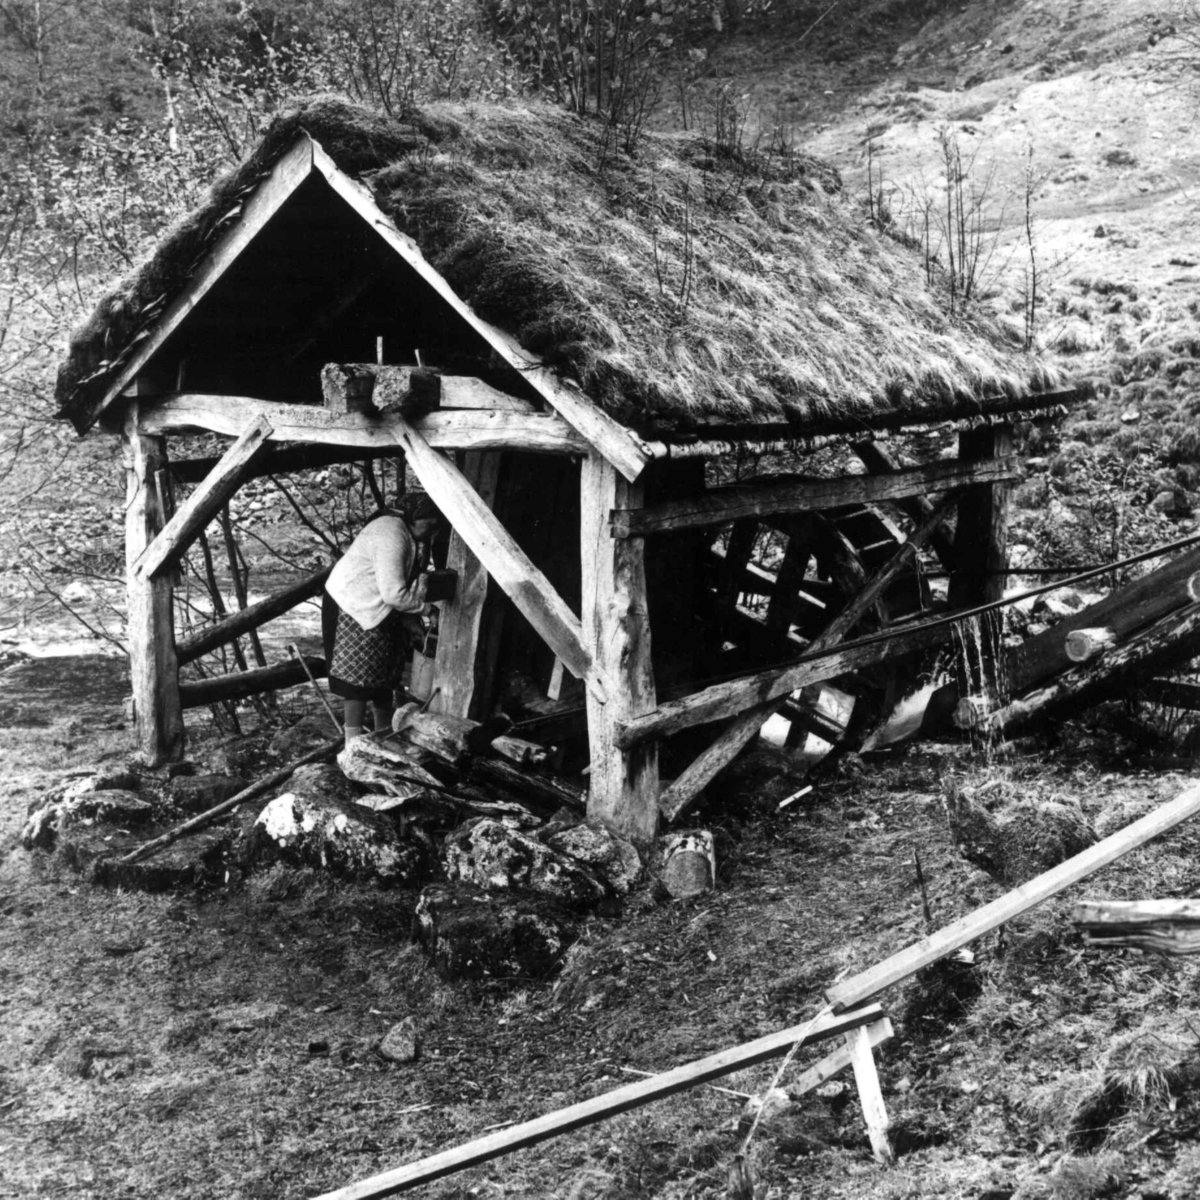 Stamping av vadmel. Serina Kvæstad i stampehuset med vannrenne, i forgrunnen vannrenne til gryte med varmt vann. Kvæstad, Suldal, Rogaland 1970.